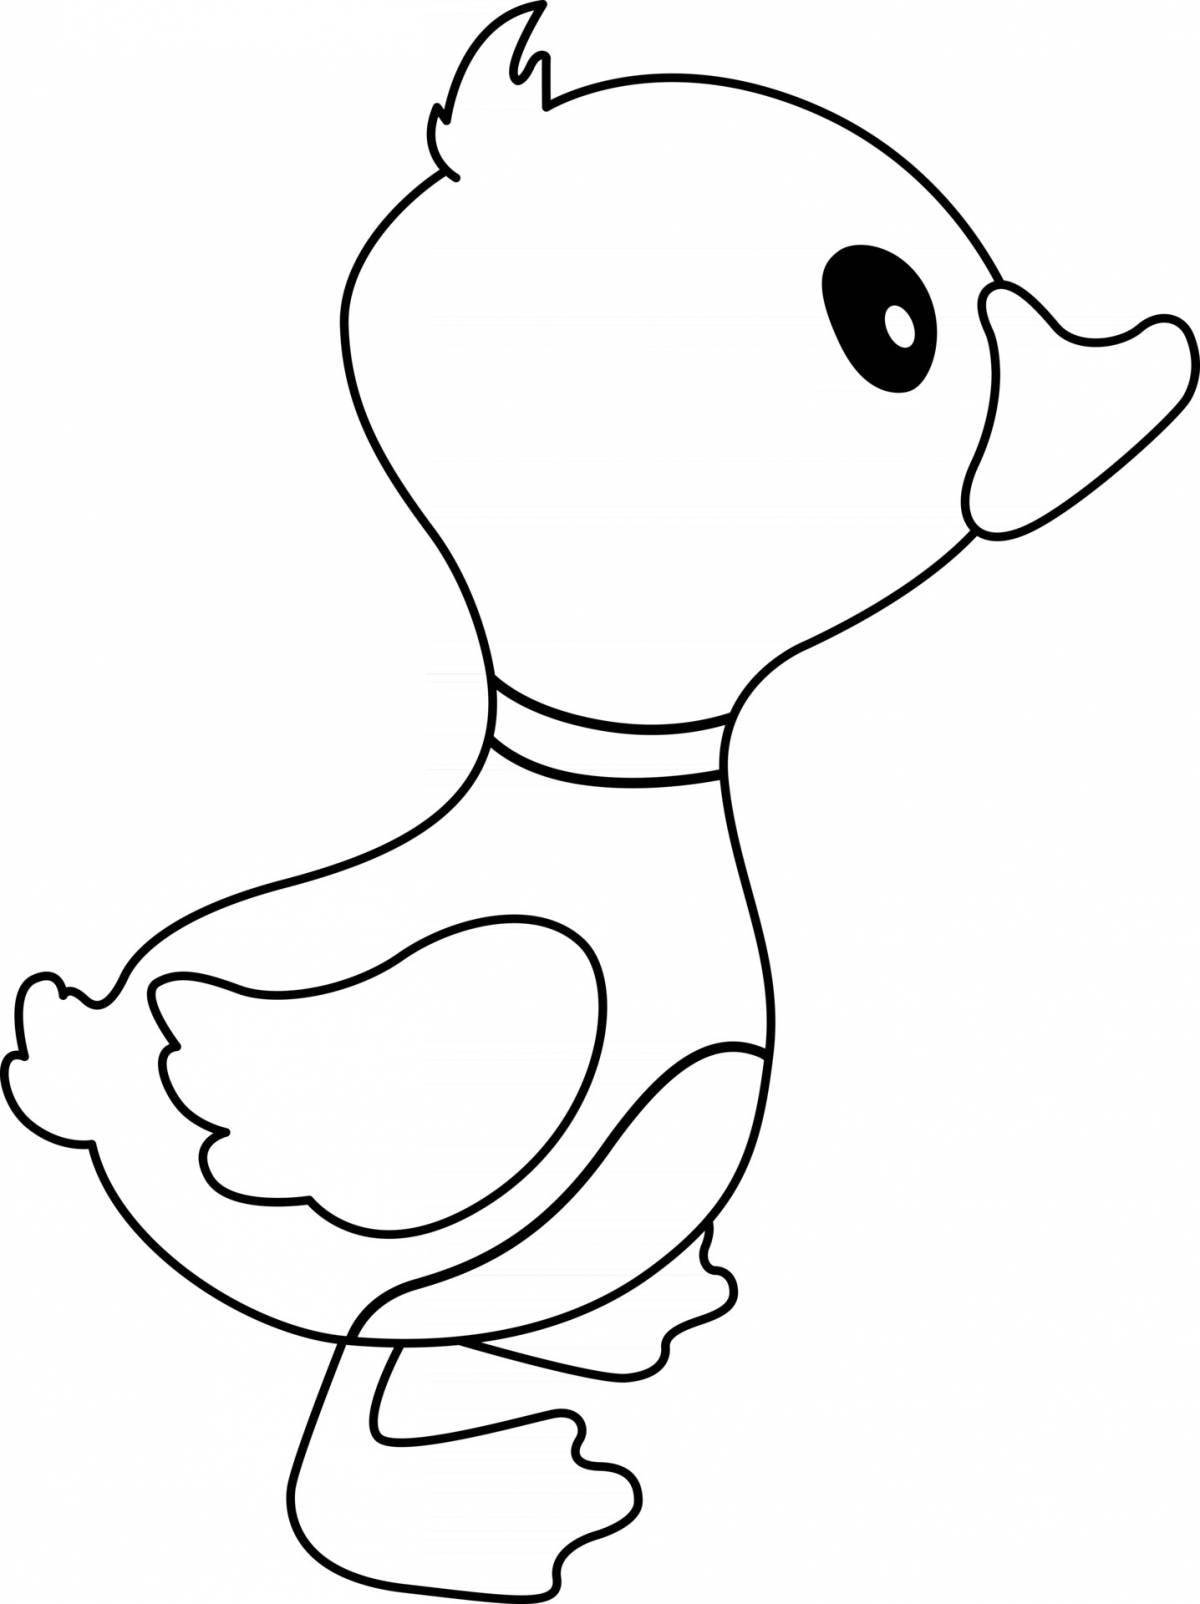 Забавная раскраска утка для детей 3-4 лет